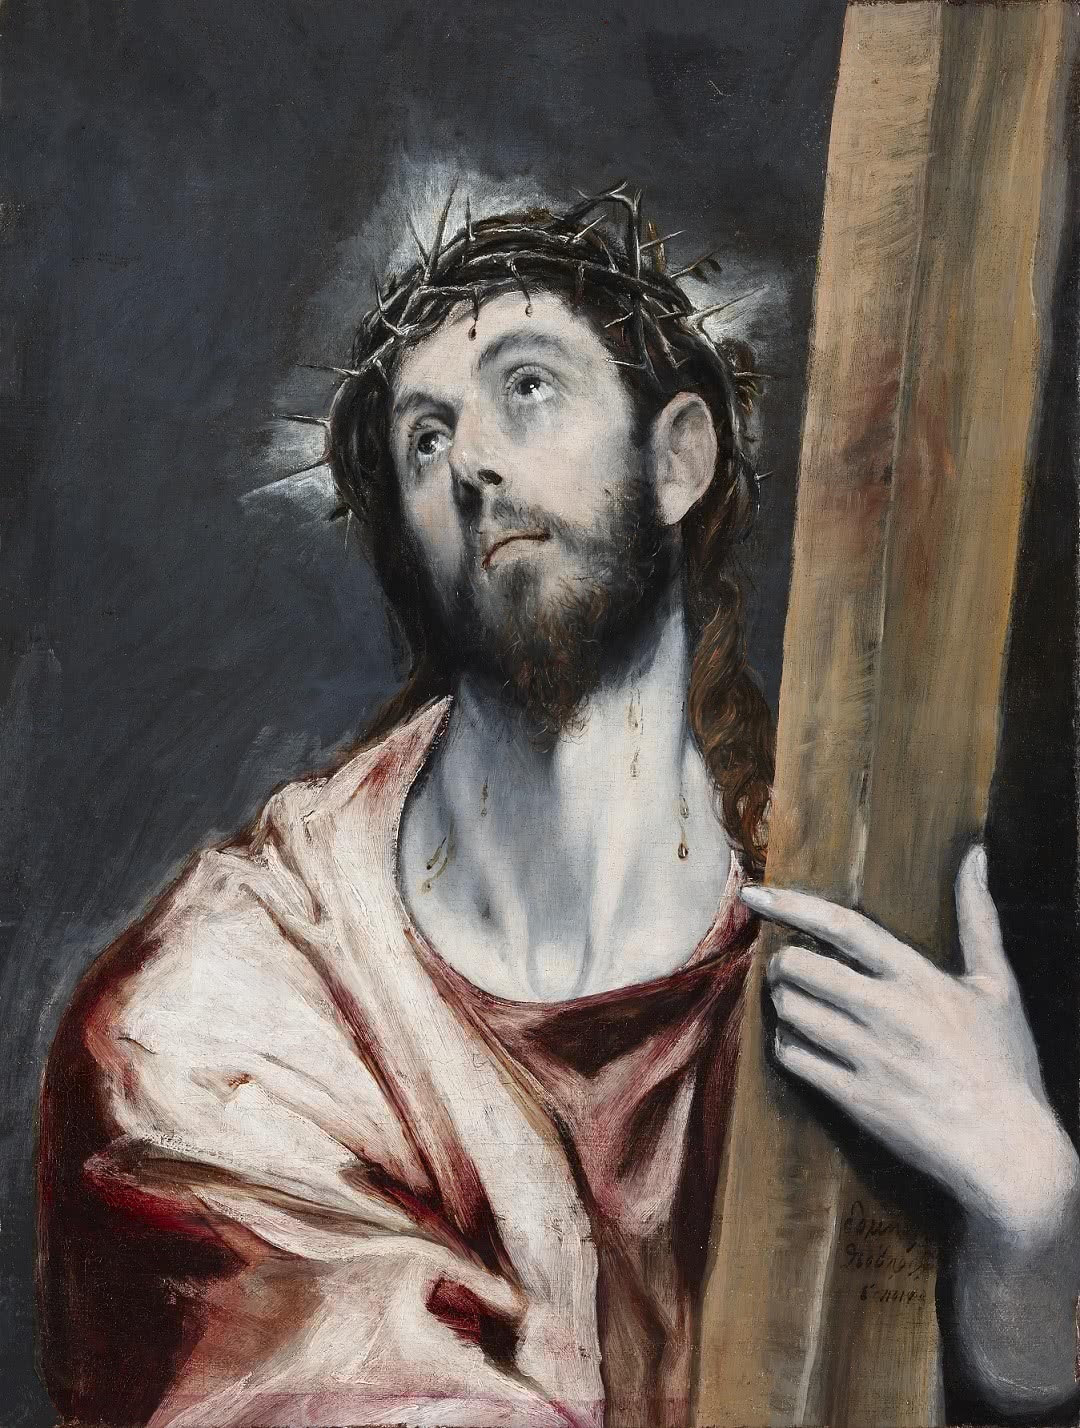 El Greco, 'Cristo con la cruz', 1585, óleo sobre lienzo. Colección particular.